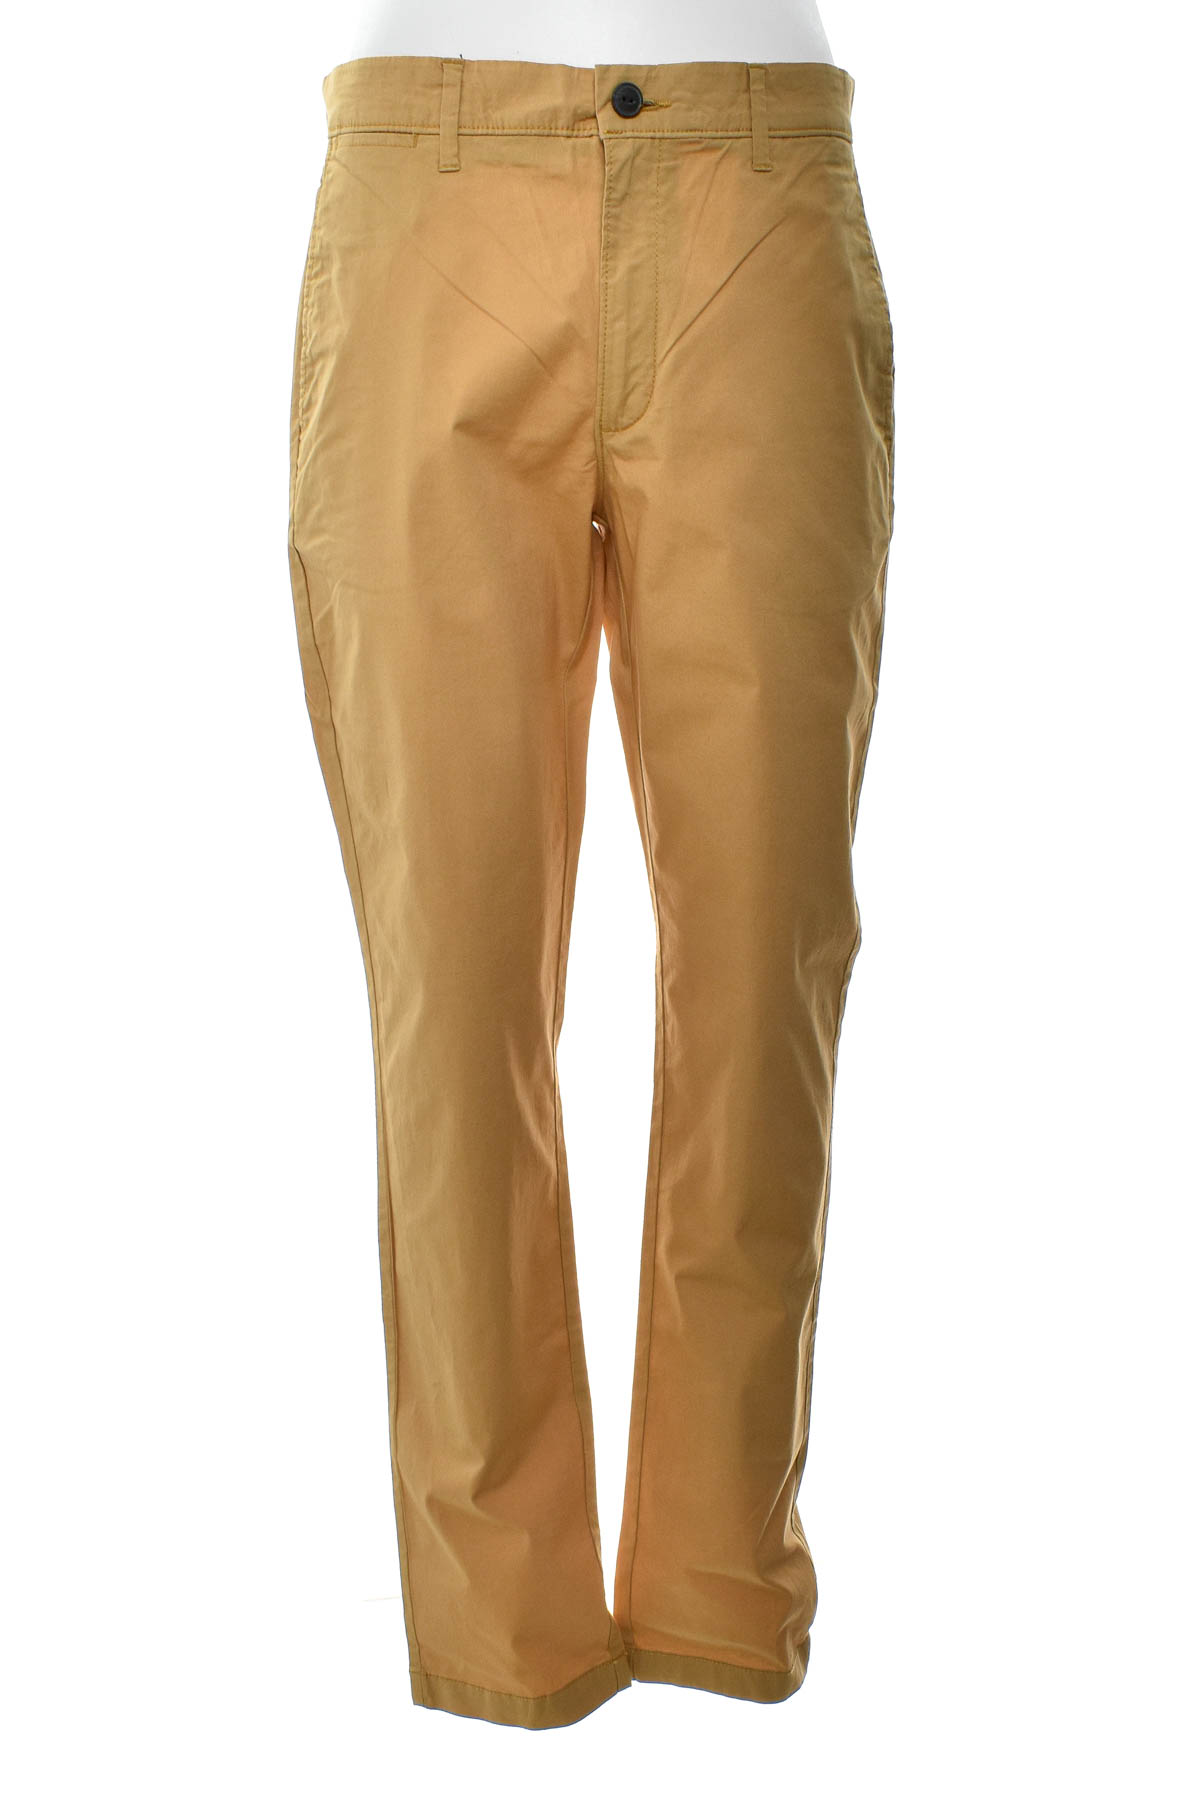 Pantalon pentru bărbați - Amazon essentials - 0